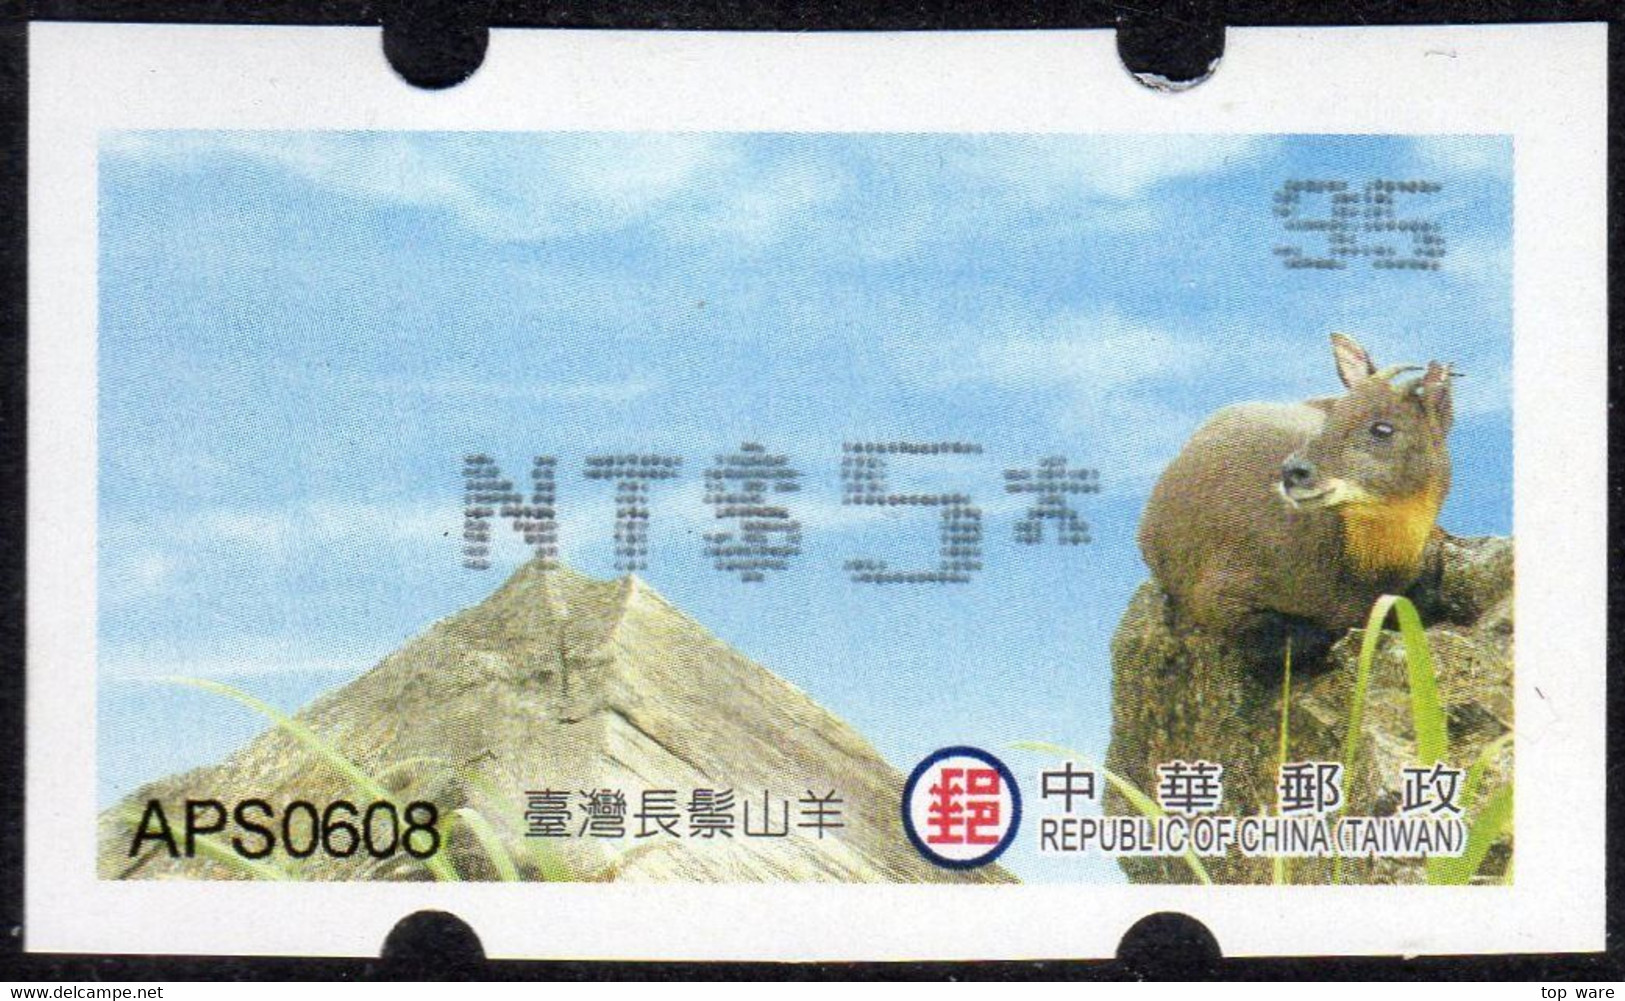 2019 Automatenmarken China Taiwan Serow MiNr.42 Black Nr.95 ATM NT$5 Xx Innovision Kiosk Etiquetas - Automatenmarken